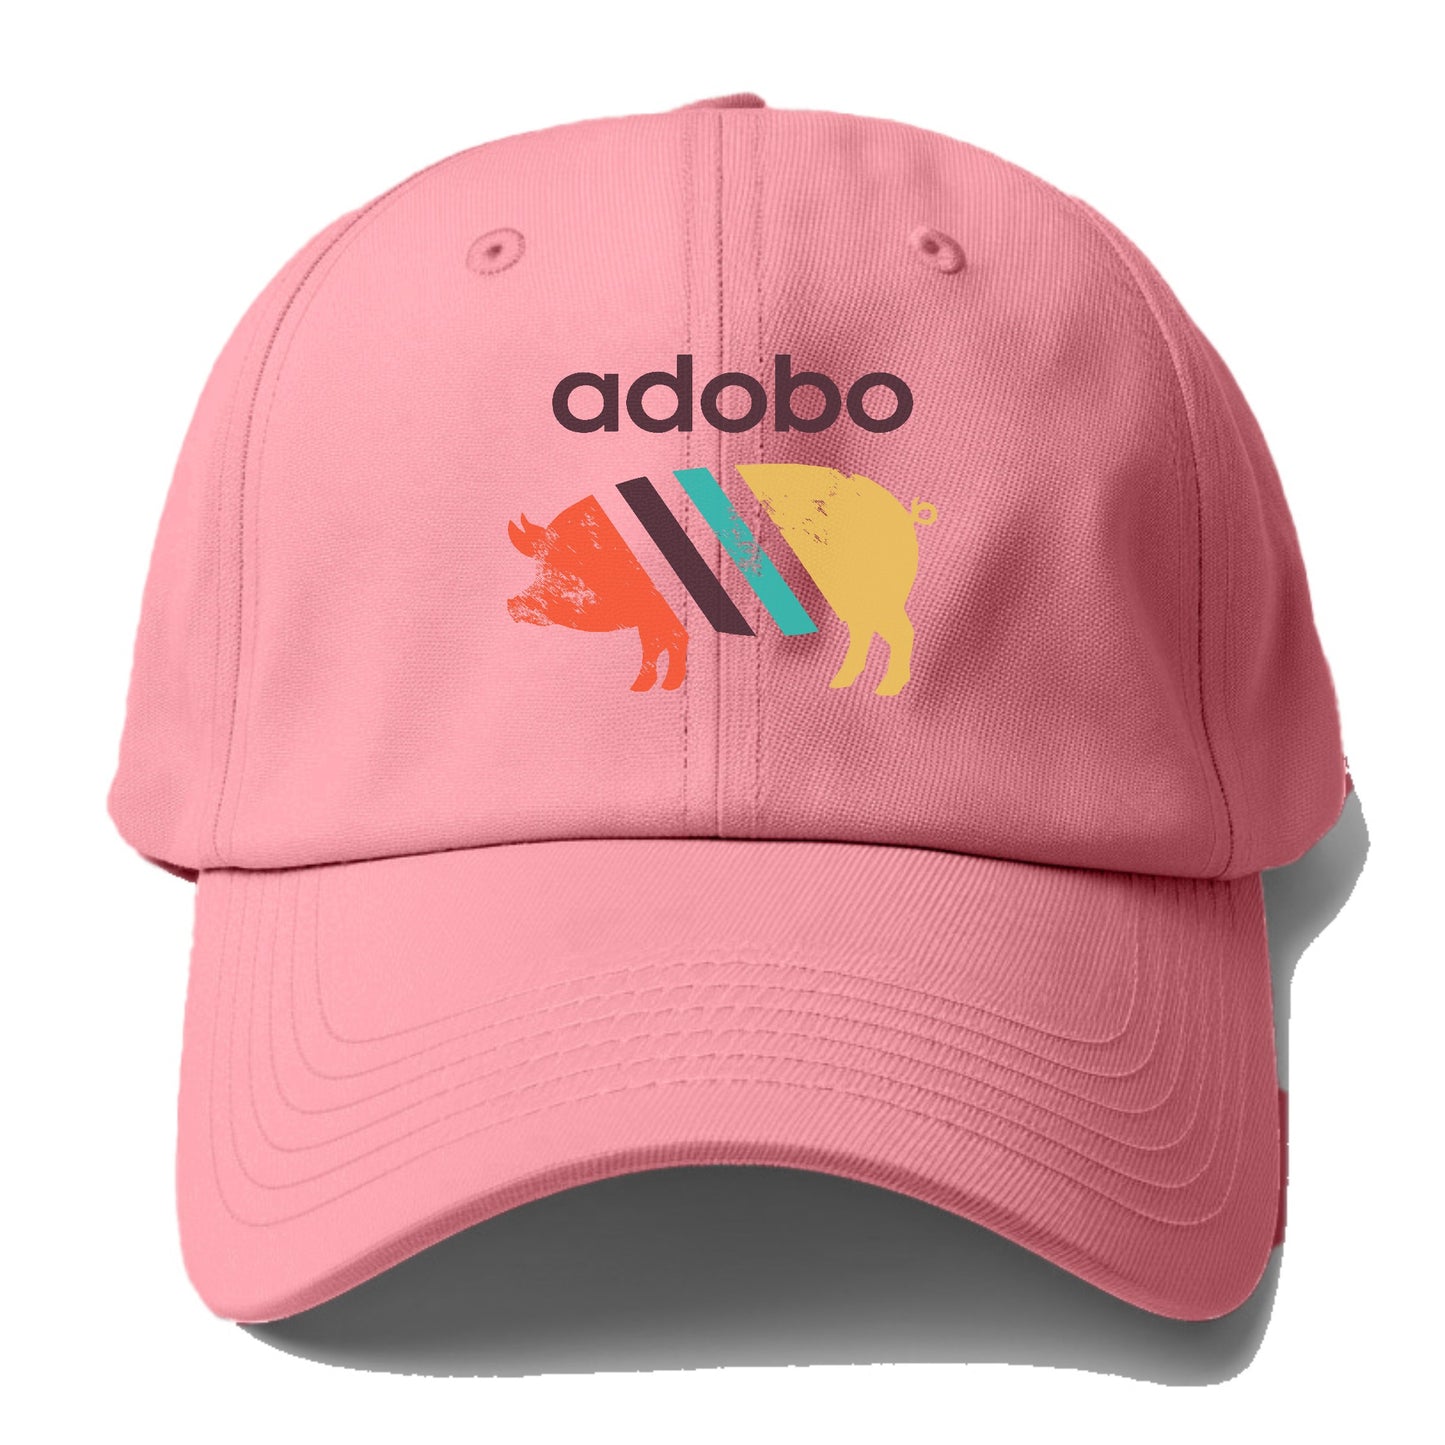 adobo Hat